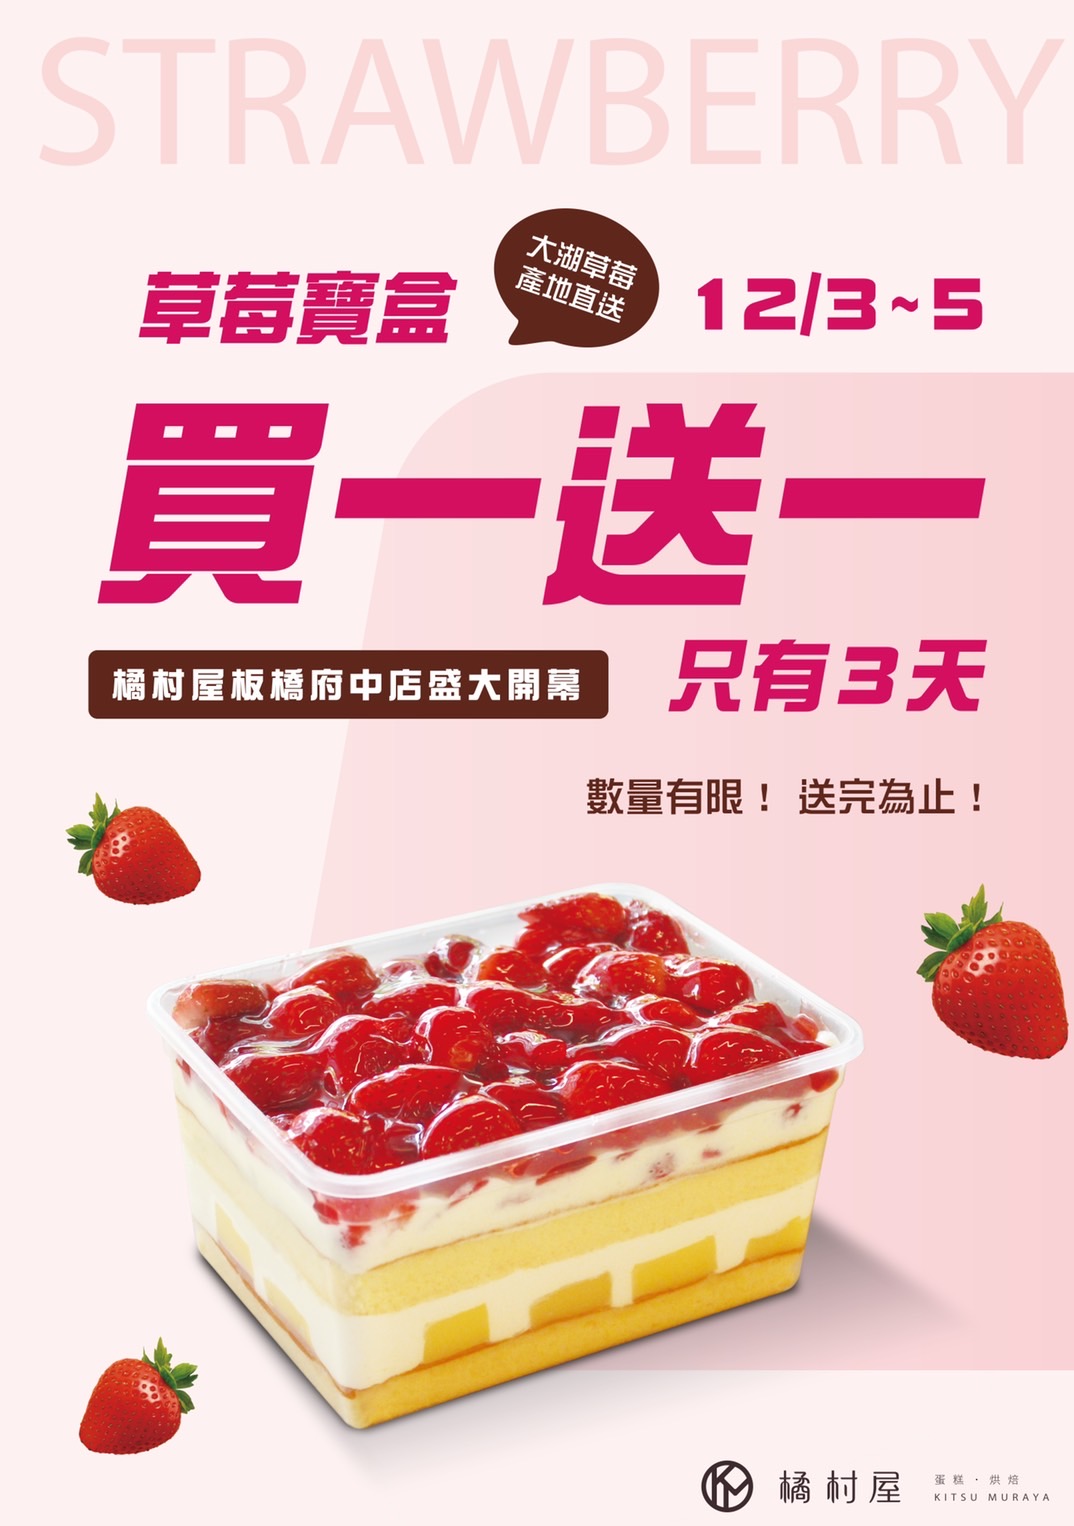 橘村屋板橋府中店2021/12/3～12/5號超人氣「草莓寶盒買一送一」